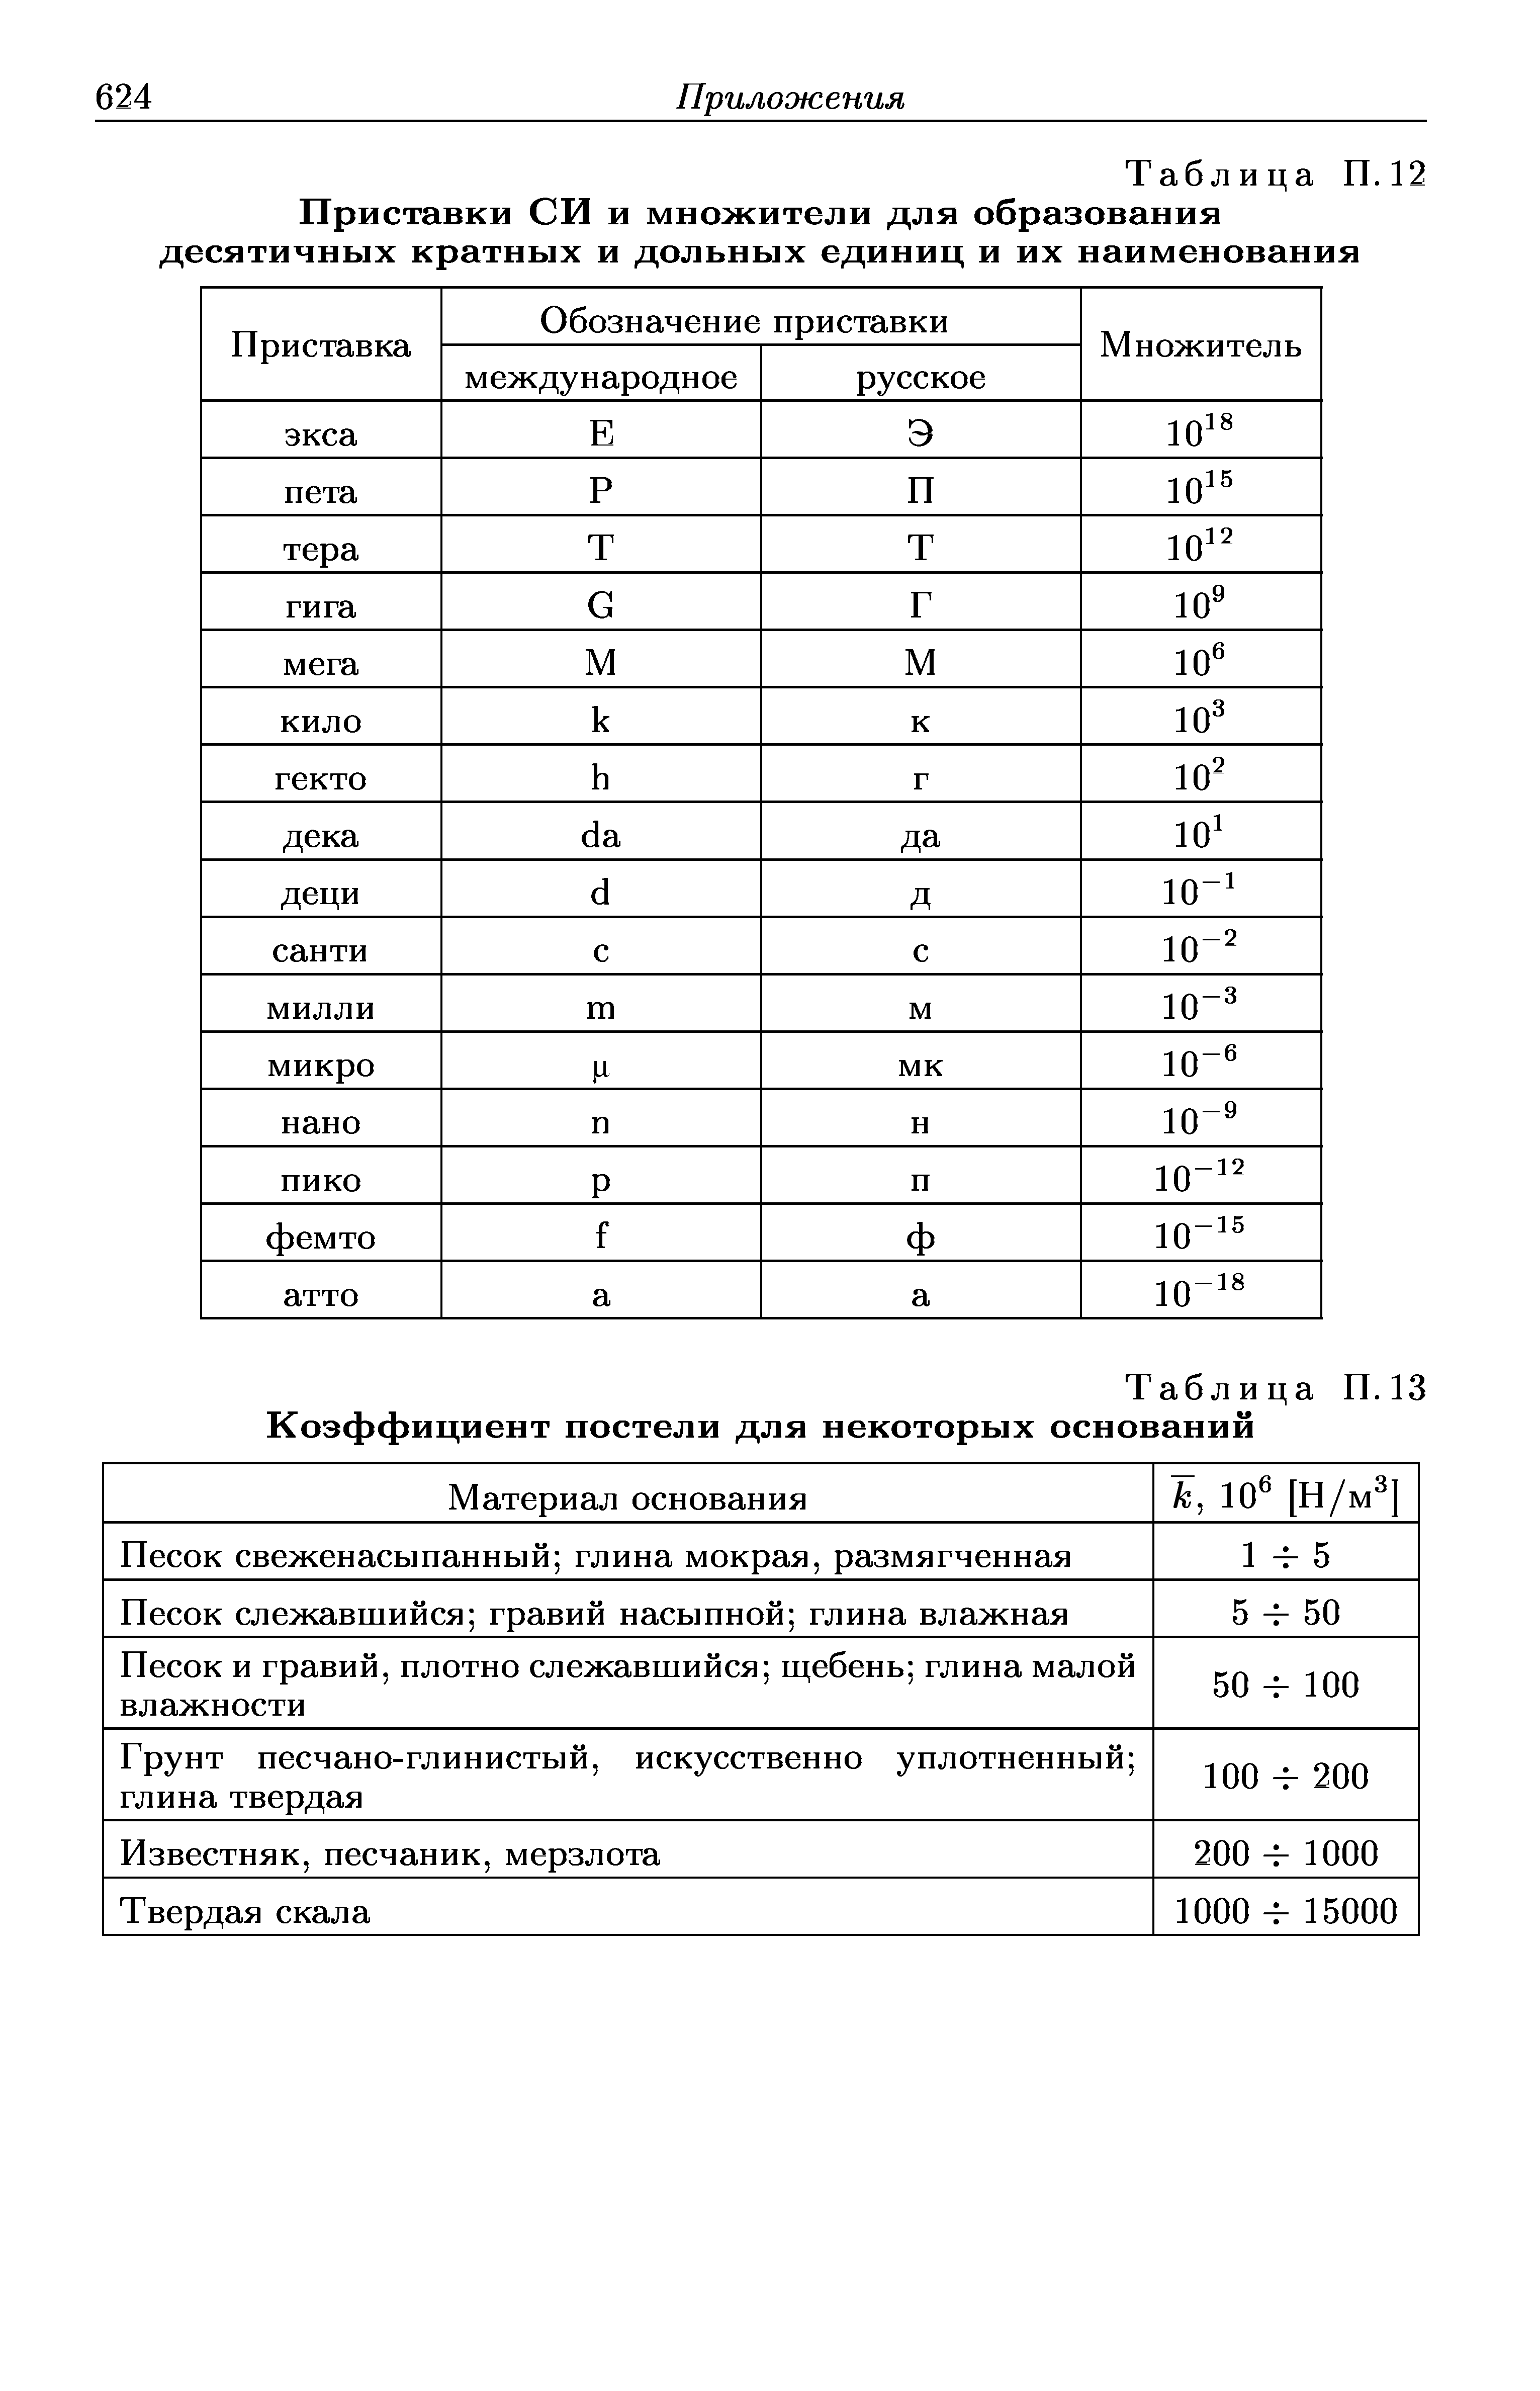 Таблица П. 12 Приставки СИ и множители для образования десятичных кратных и <a href="/info/18837">дольных единиц</a> и их наименования
